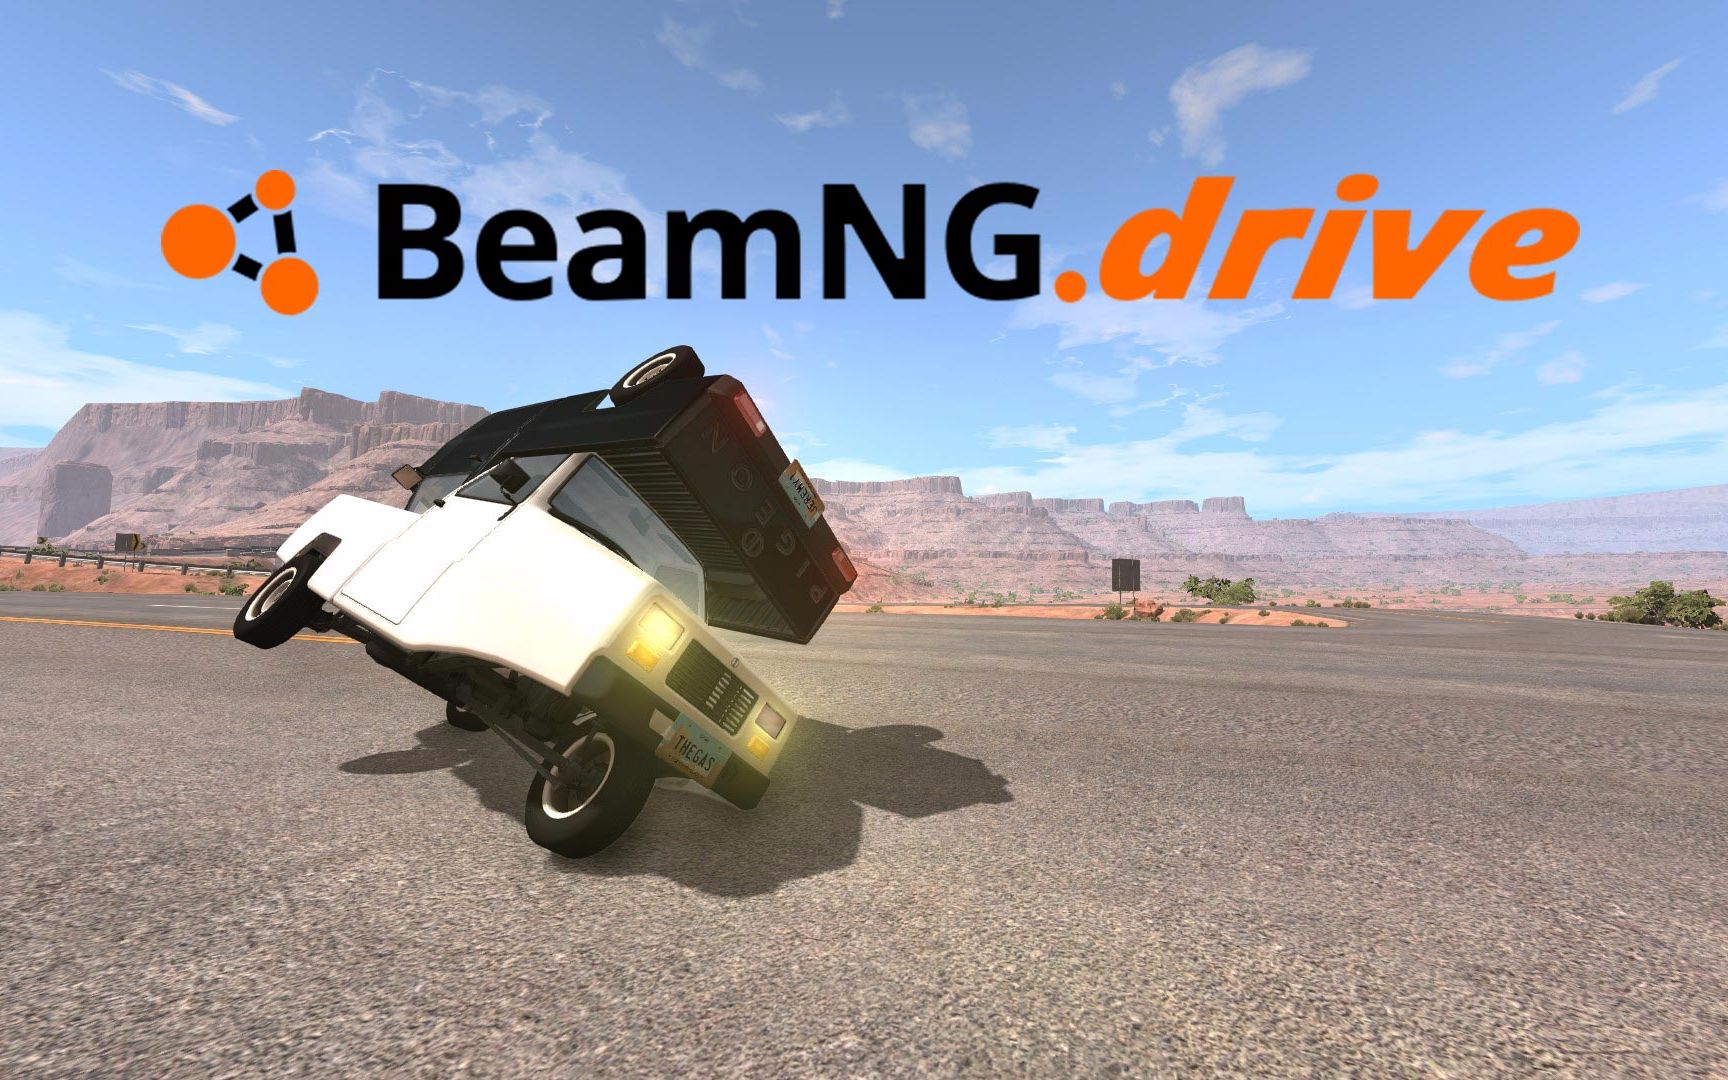 BeamNG Drive